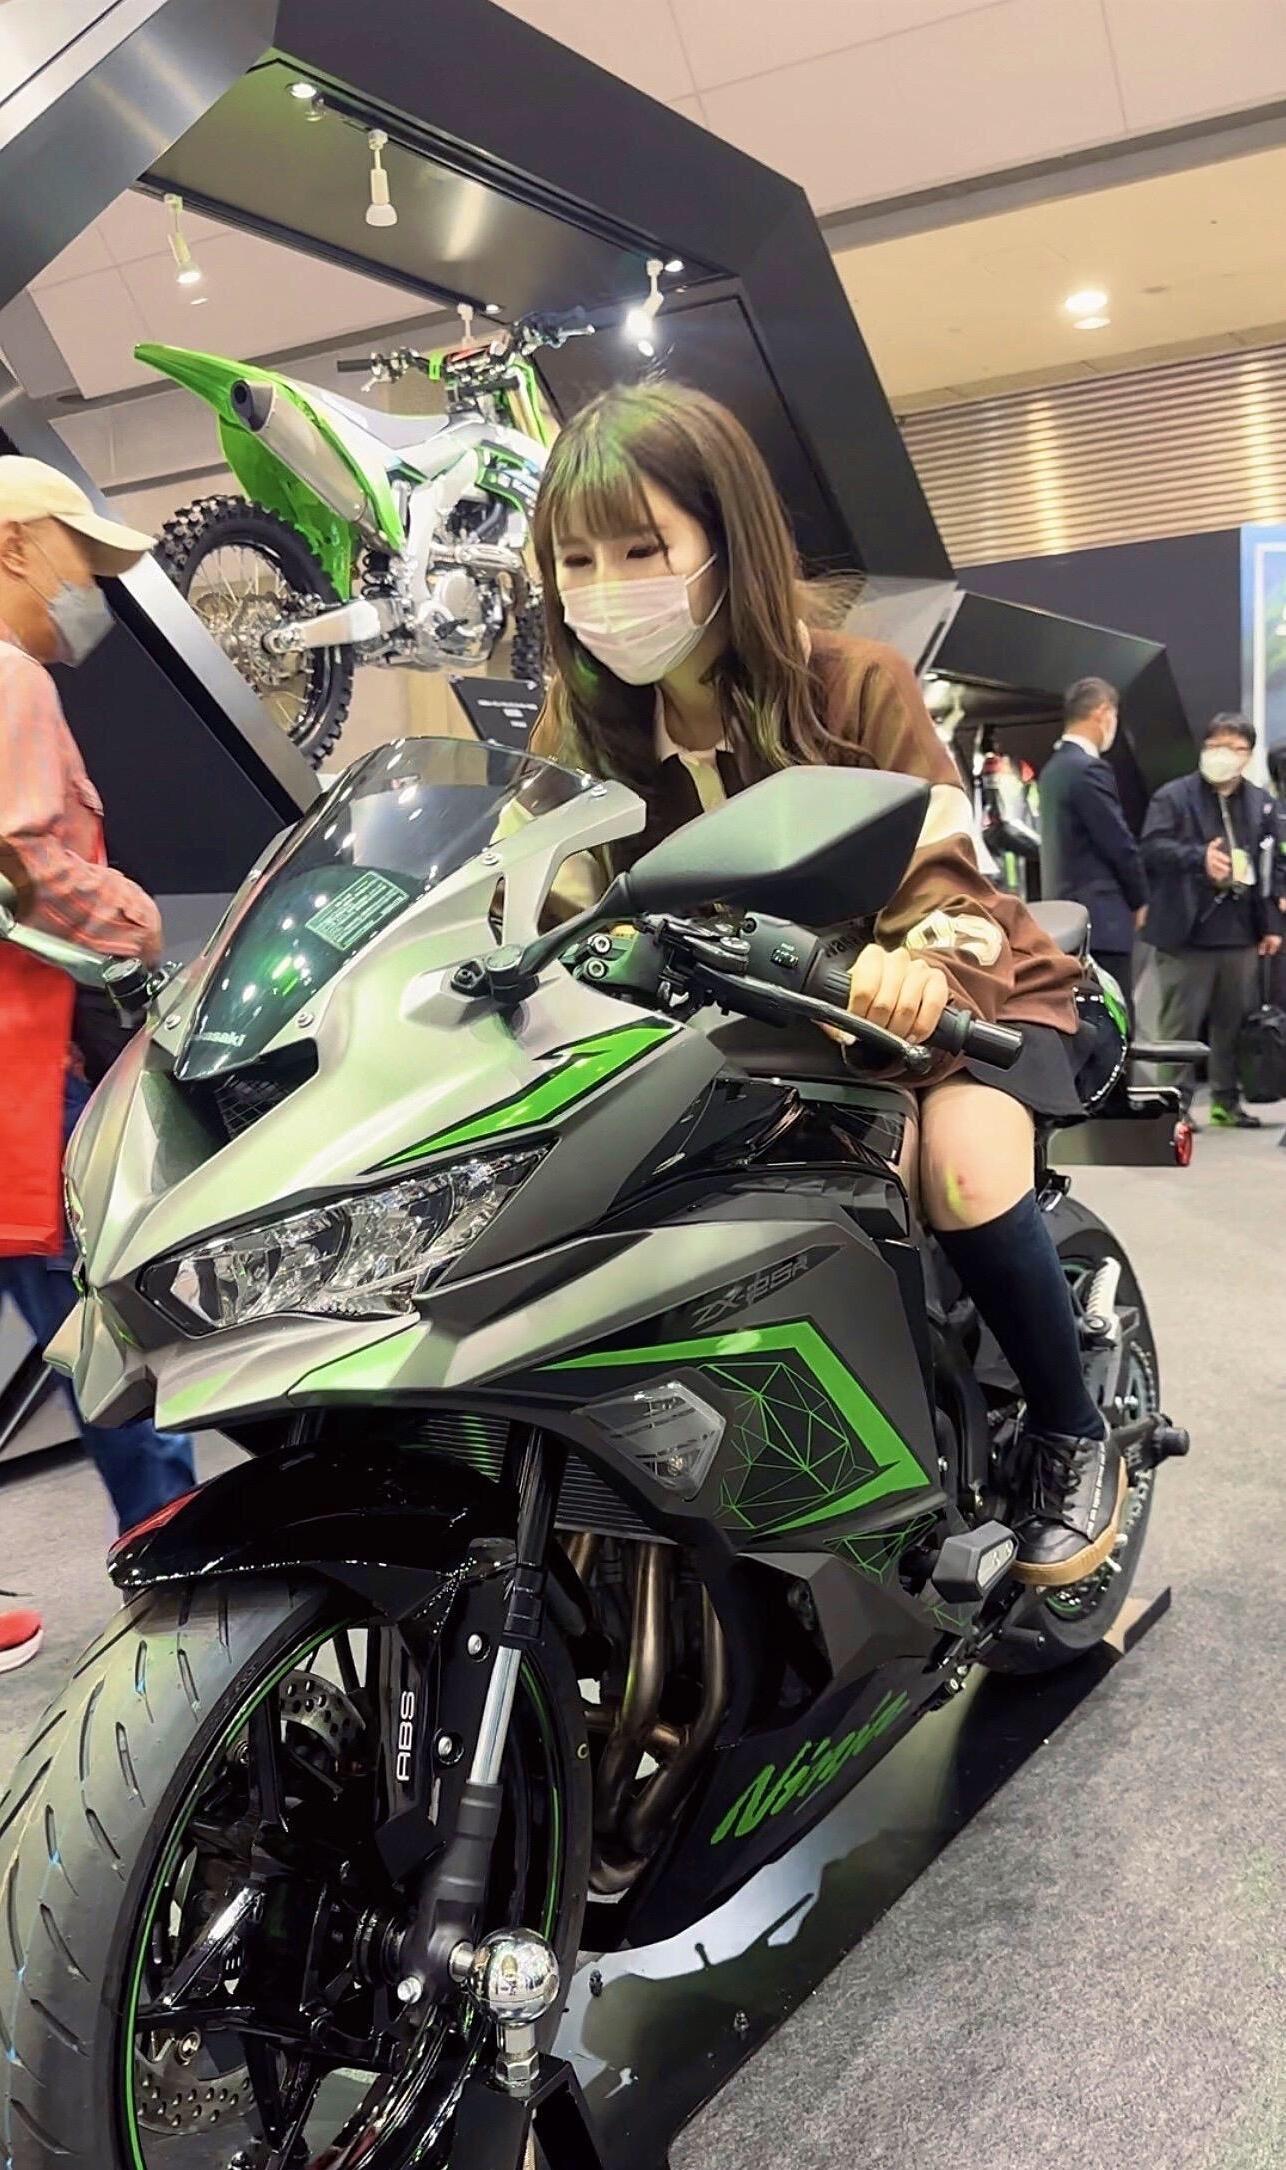 北京摩托车会展盛大开幕,有超多小姐姐捧场!